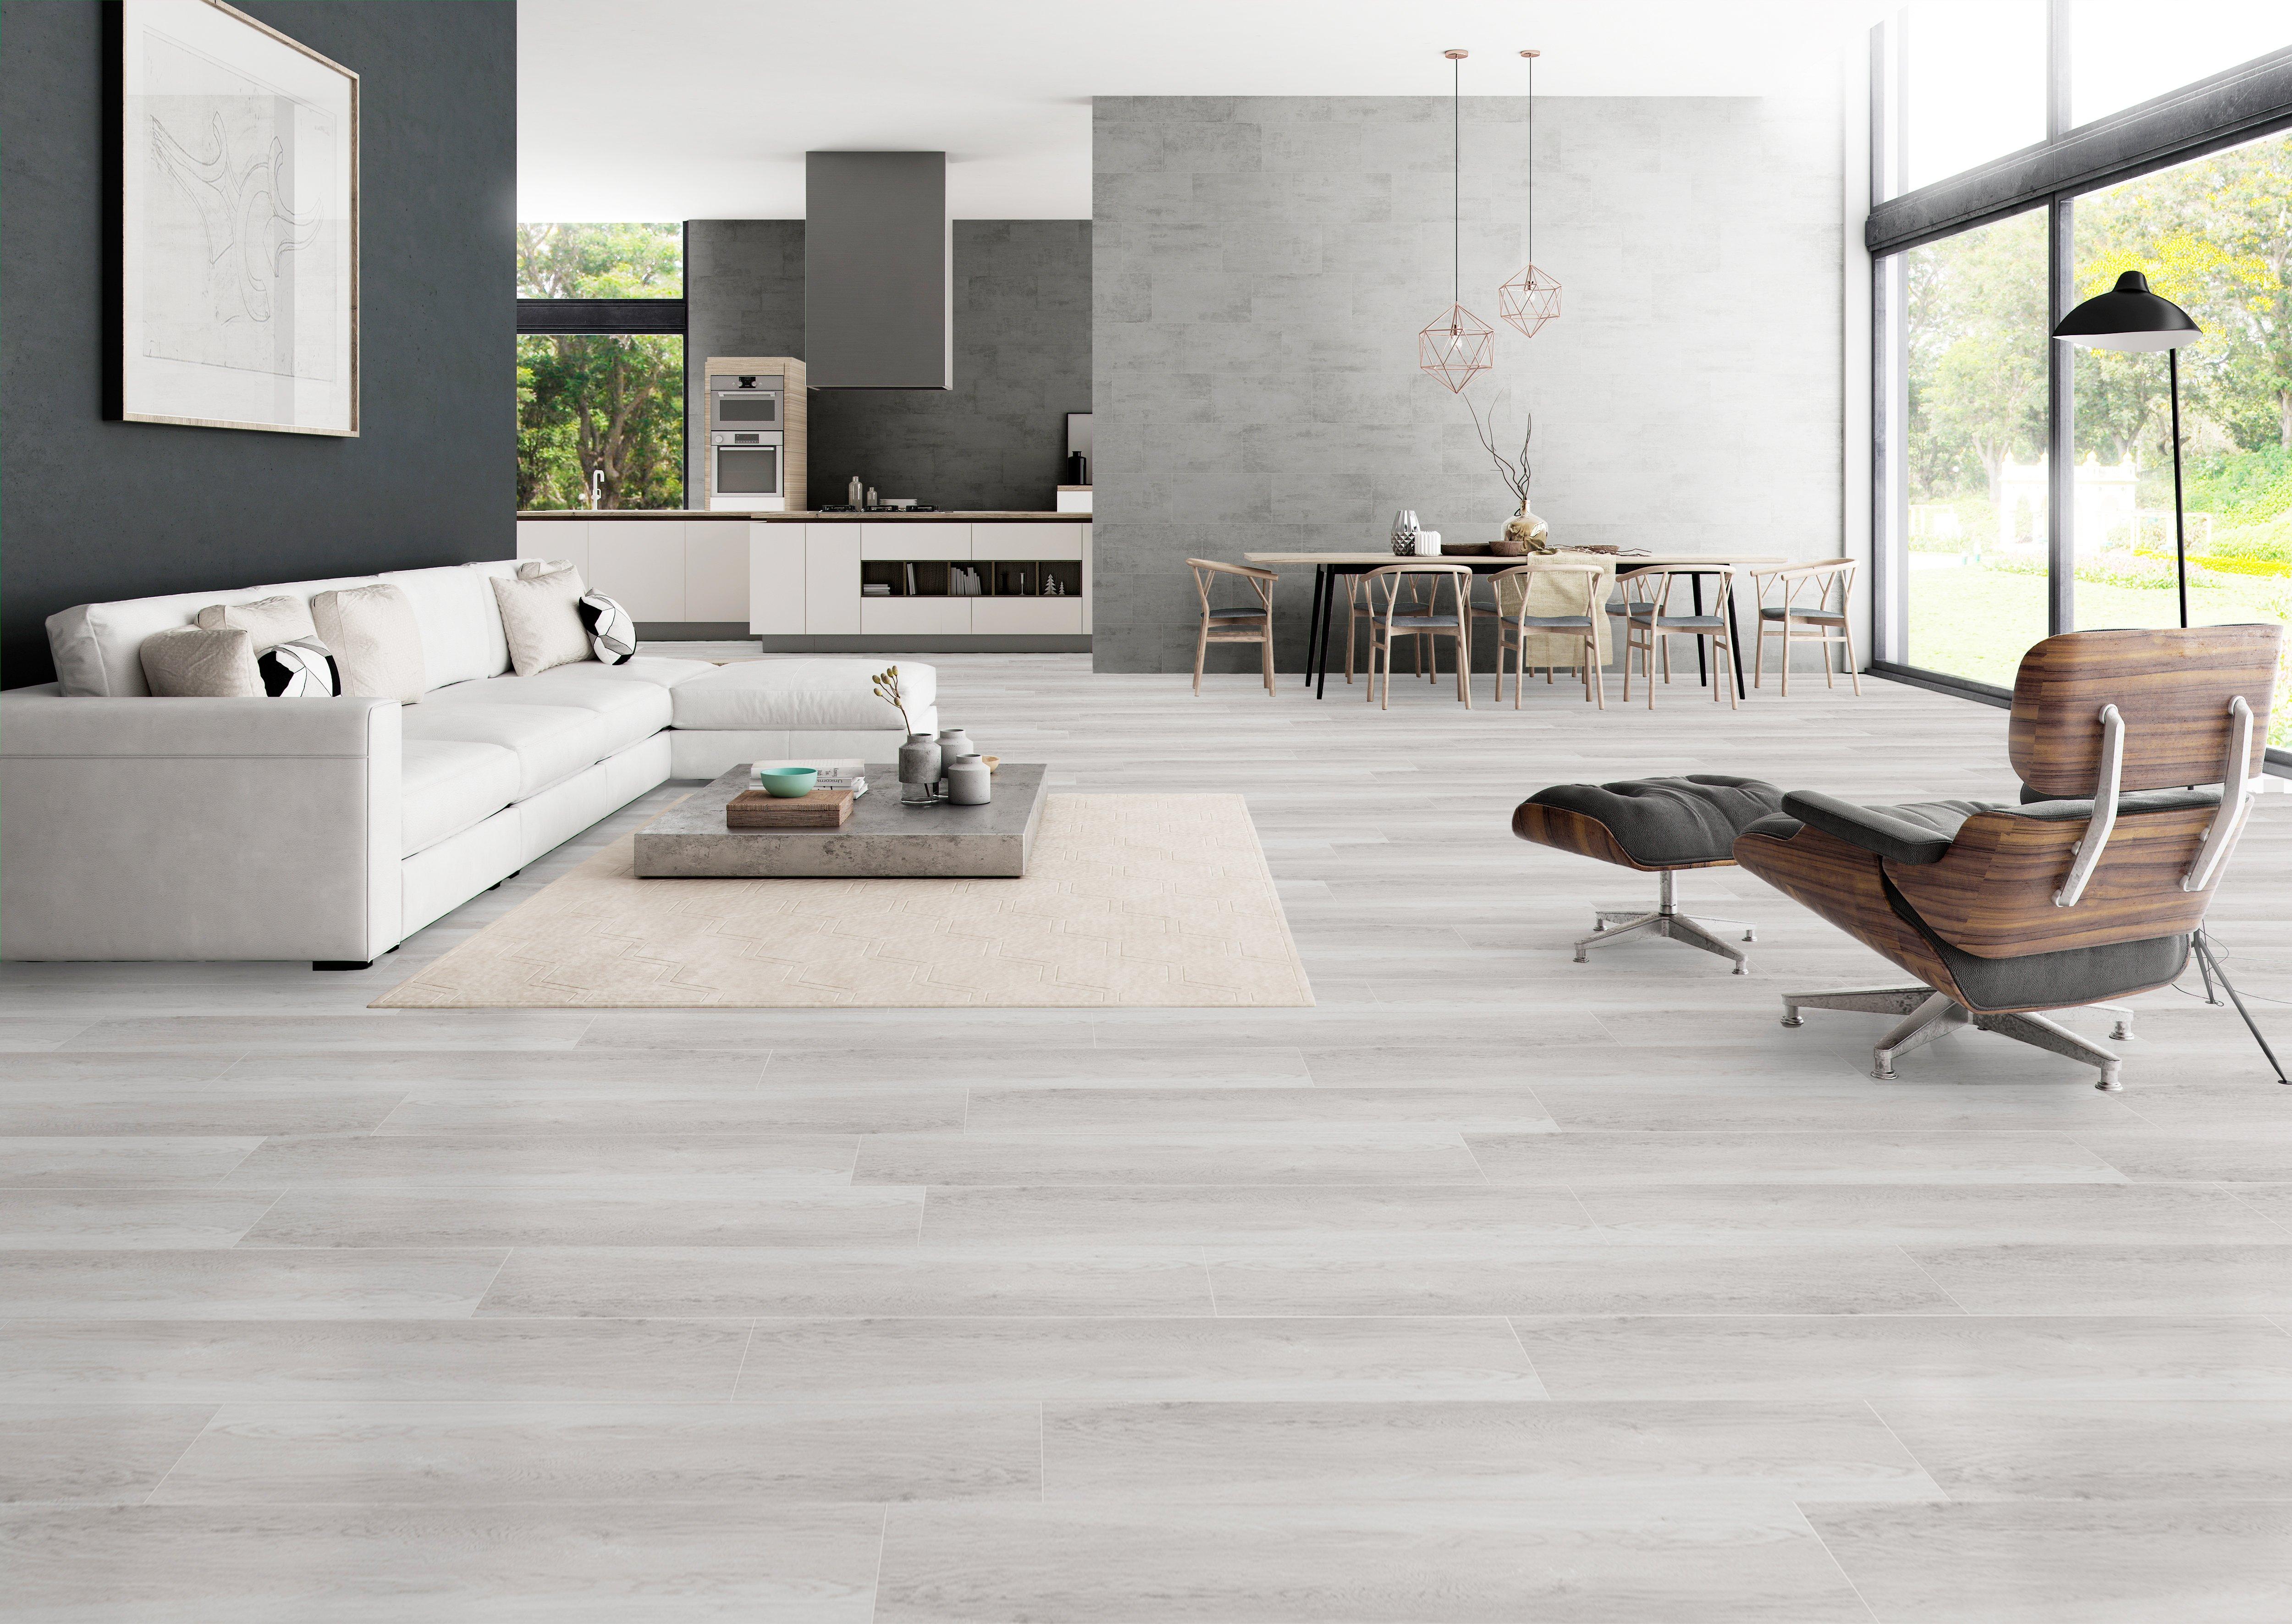 Our New Wood Look Tile Floors - BREPURPOSED  Wood tile floor kitchen, Tile  floor living room, Ceramic wood tile floor